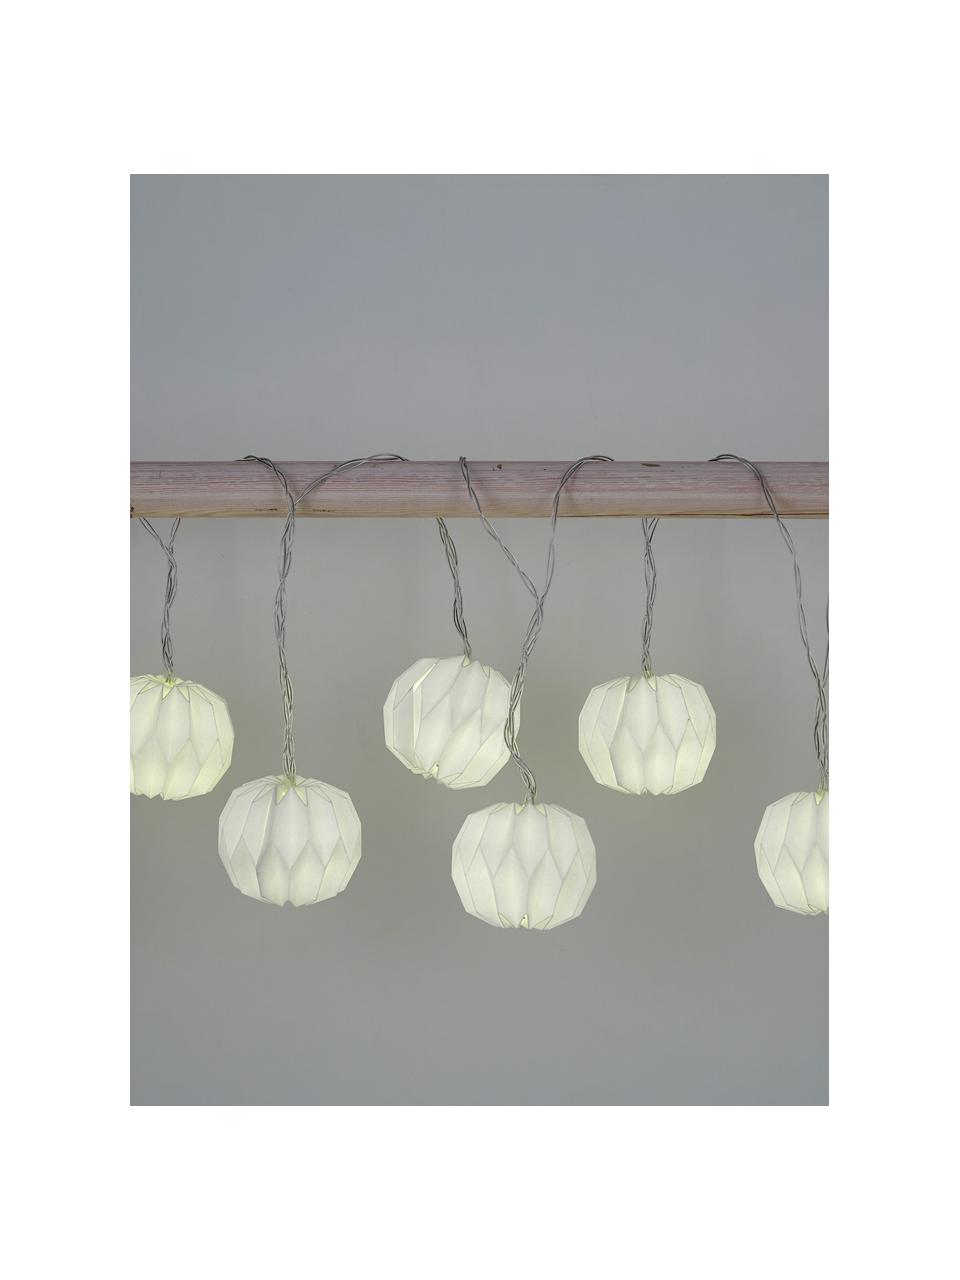 LED-Lichterkette Hanami, 259 cm, 8 Lampions, Papier, Metall, Kunststoff (PVC), Weiss, L 259 cm